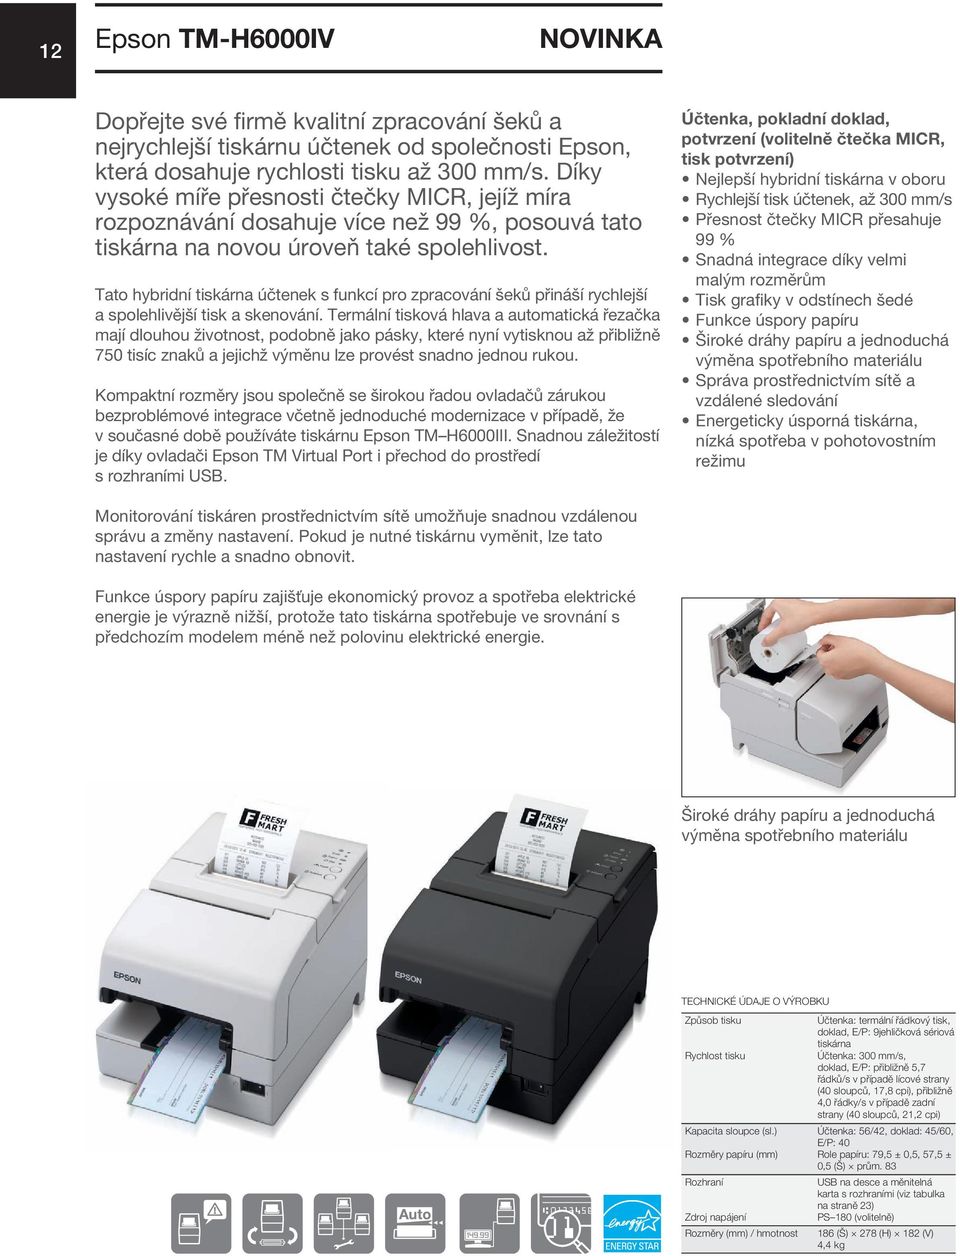 Tato hybridní tiskárna účtenek s funkcí pro zpracování šeků přináší rychlejší a spolehlivější tisk a skenování.